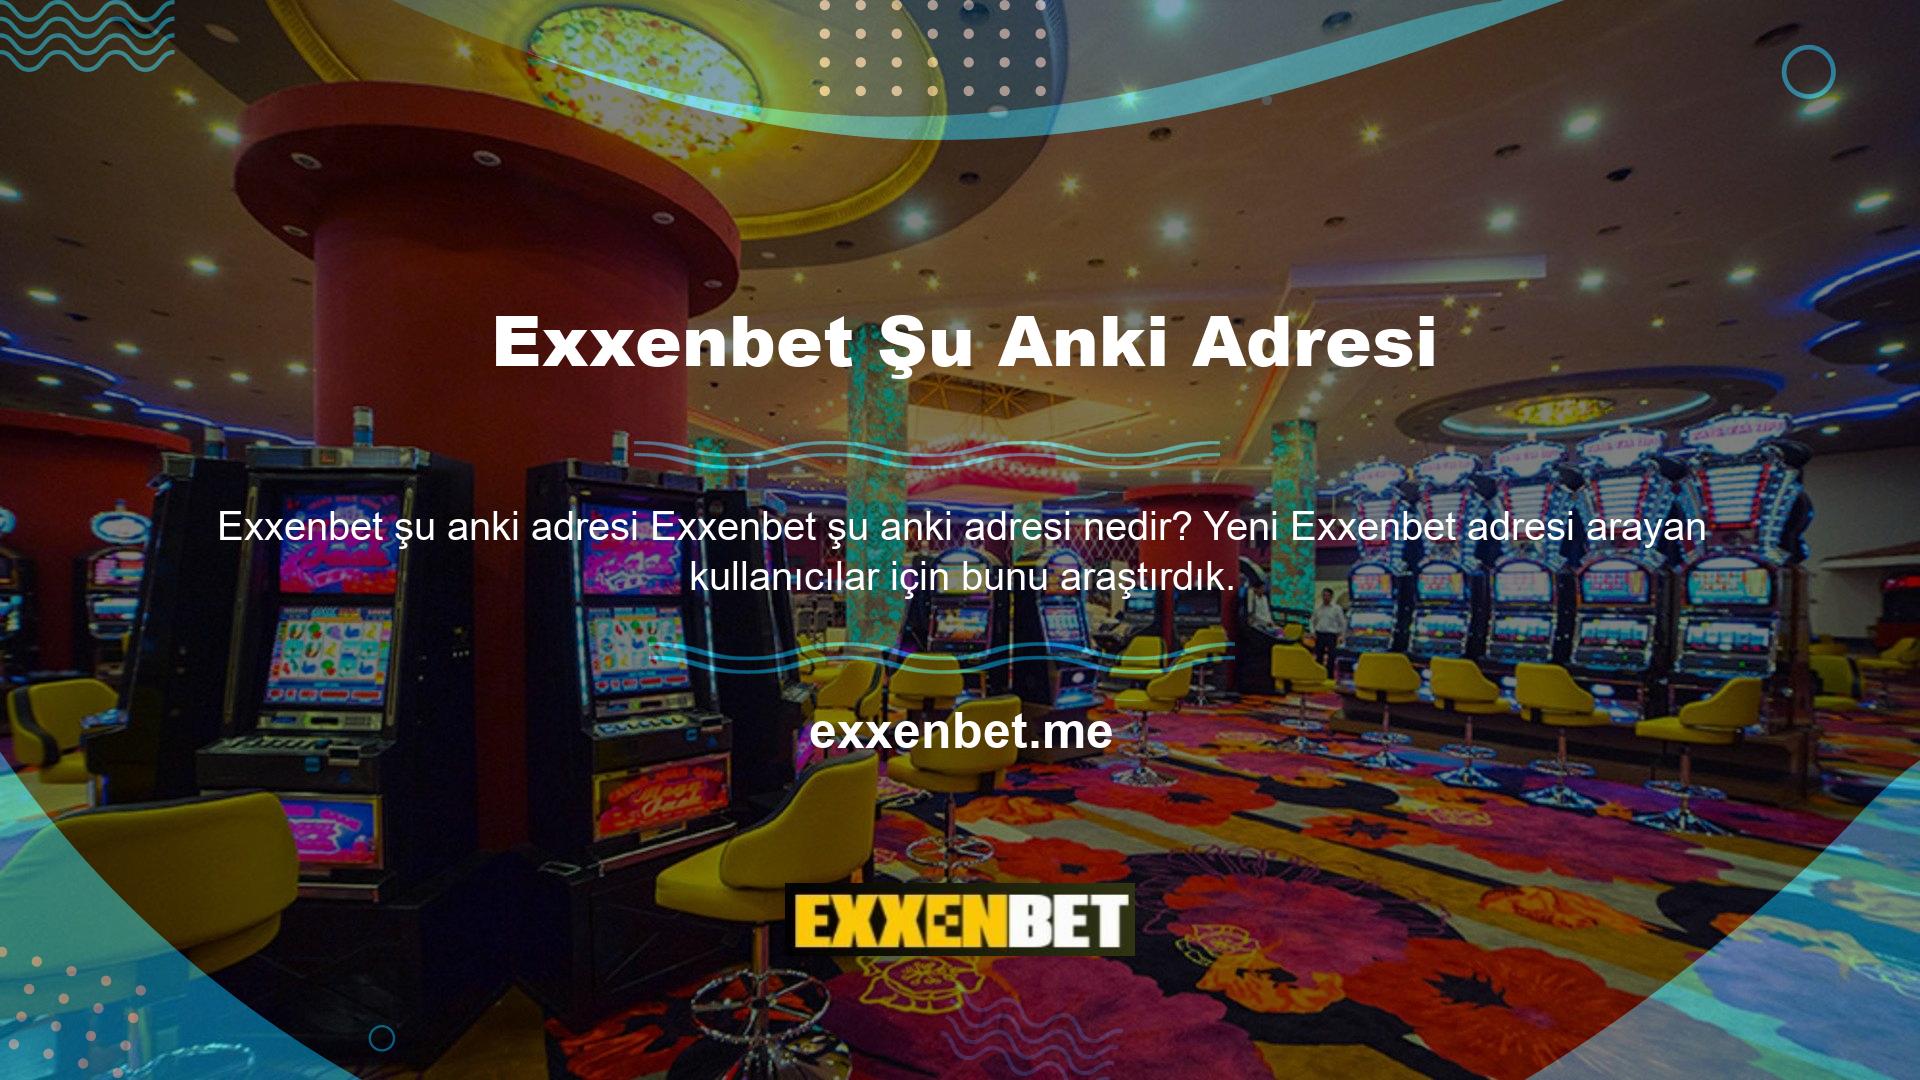 Şu ana kadar platformun hizmetlerini Exxenbet üzerinden sunduğunu gördük